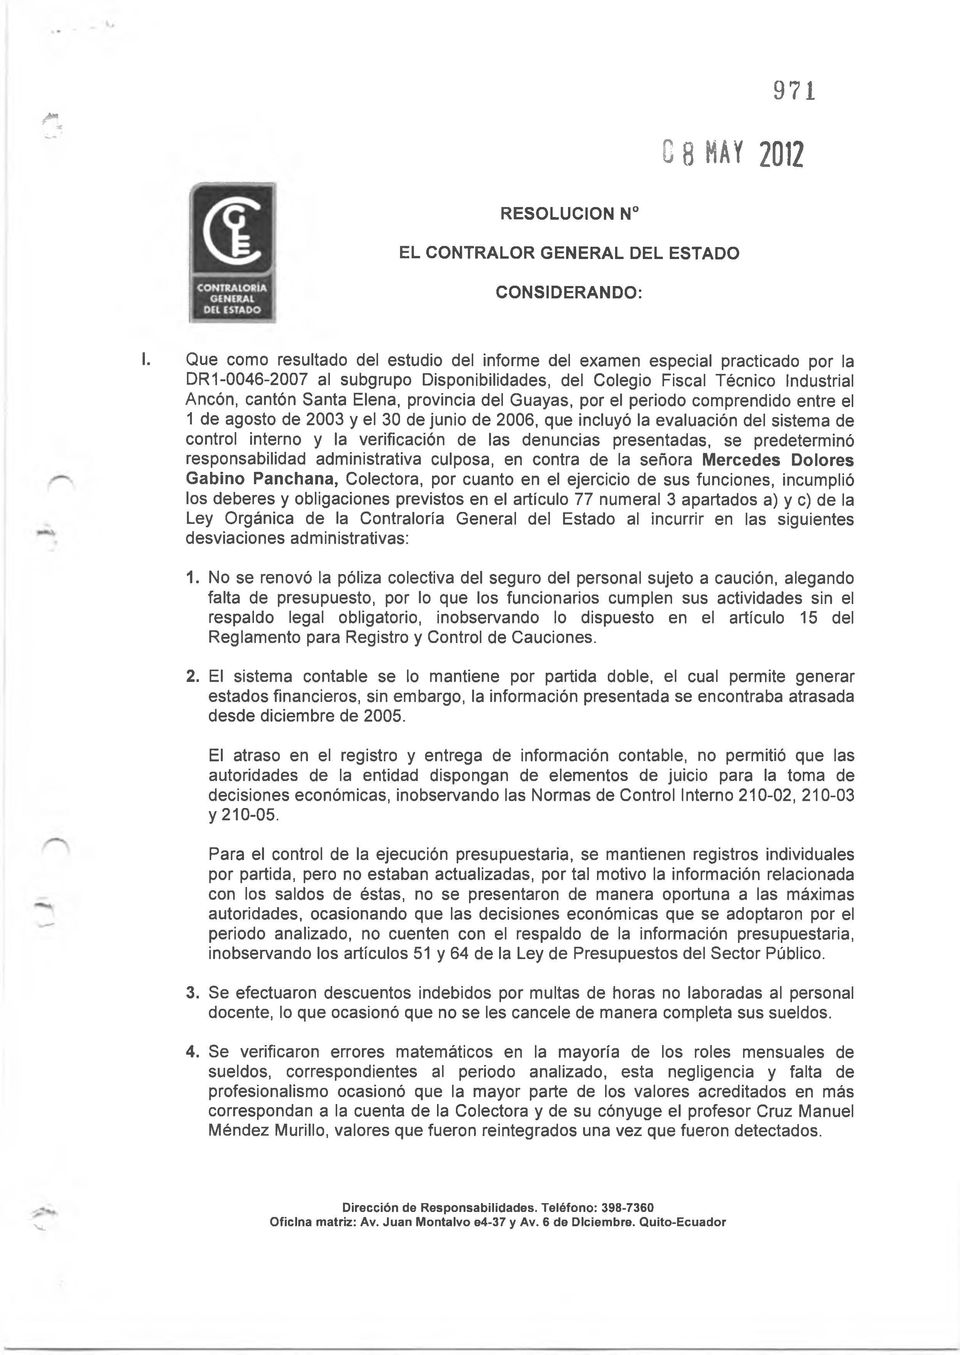 del Guayas, por el periodo comprendido entre el 1 de agosto de 2003 y el 30 de junio de 2006, que incluyó la evaluación del sistema de control interno y la verificación de las denuncias presentadas,